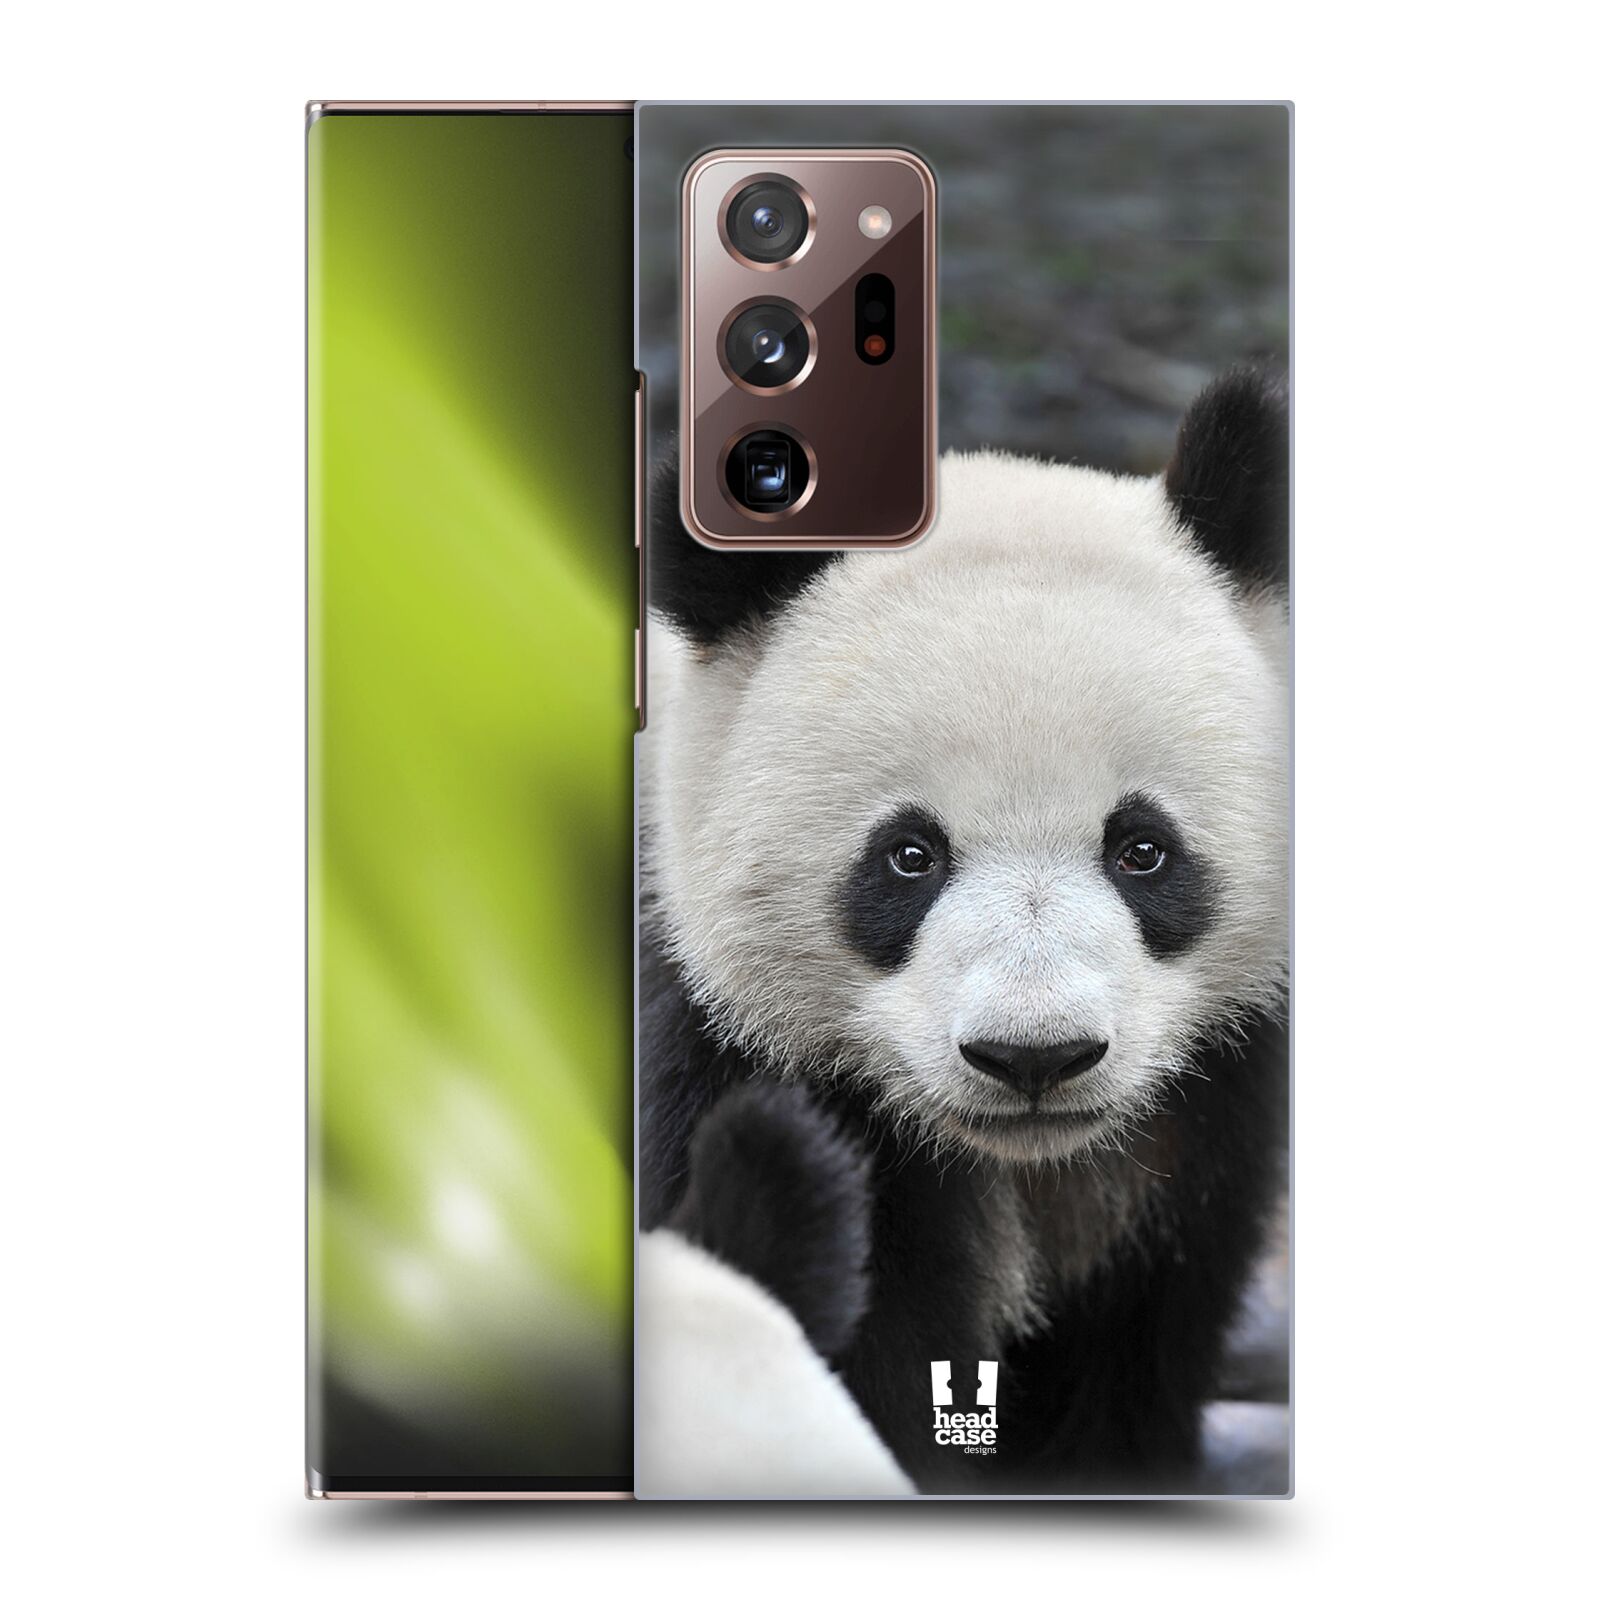 Zadní obal pro mobil Samsung Galaxy Note 20 ULTRA - HEAD CASE - Svět zvířat medvěd panda